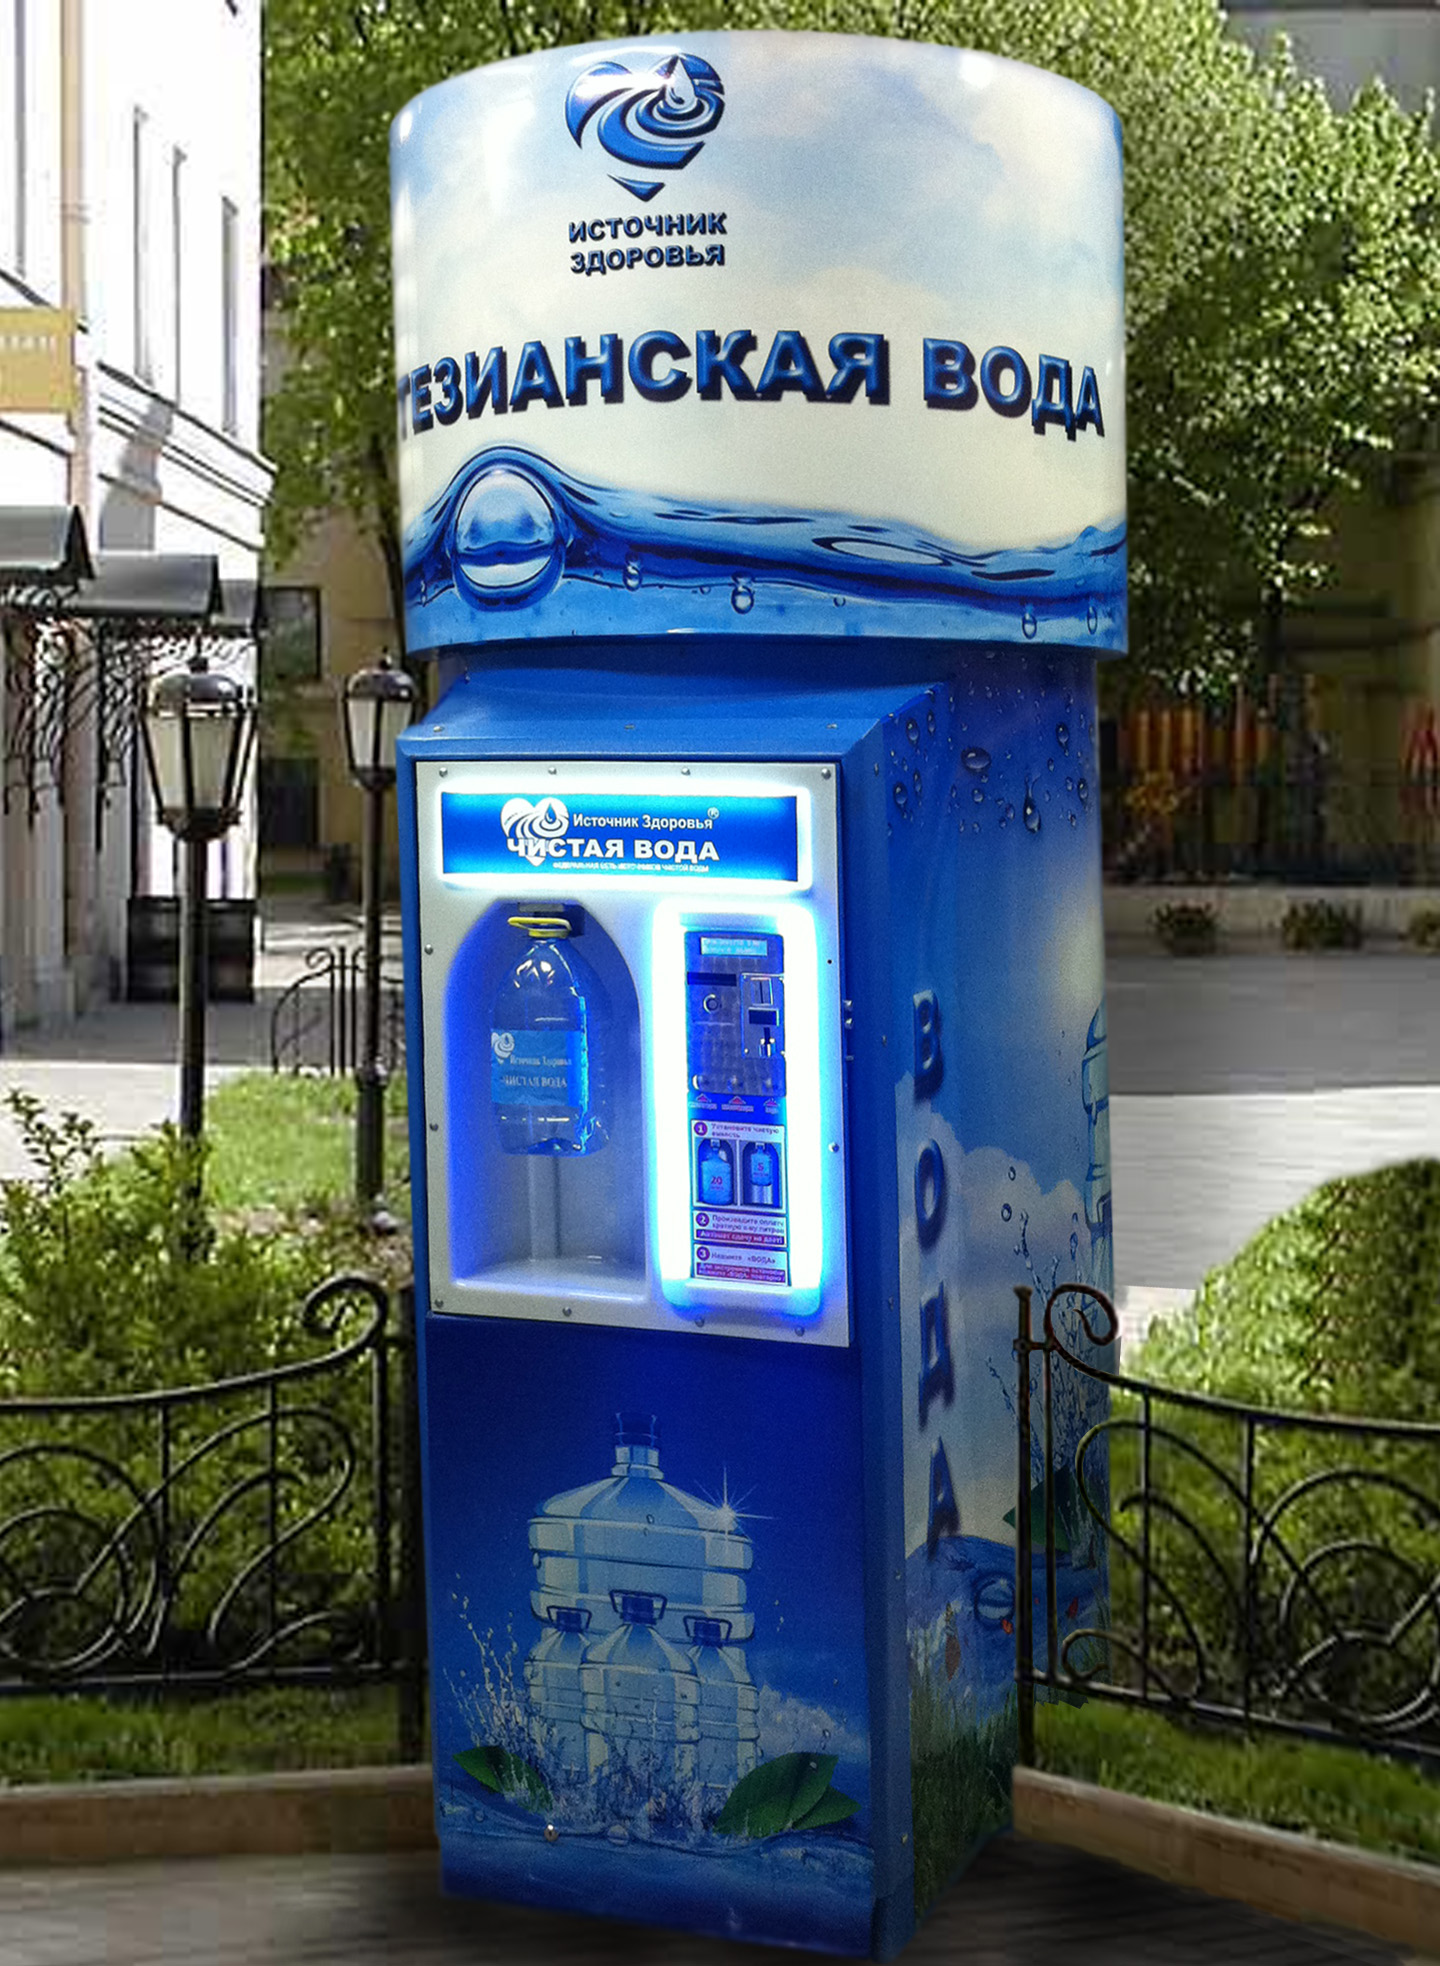 Реализация питьевой воды и напитков в розлив. Автомат с водой. Аппарат для воды. Автомат для розлива воды. Аппарат для розлива воды на улице.